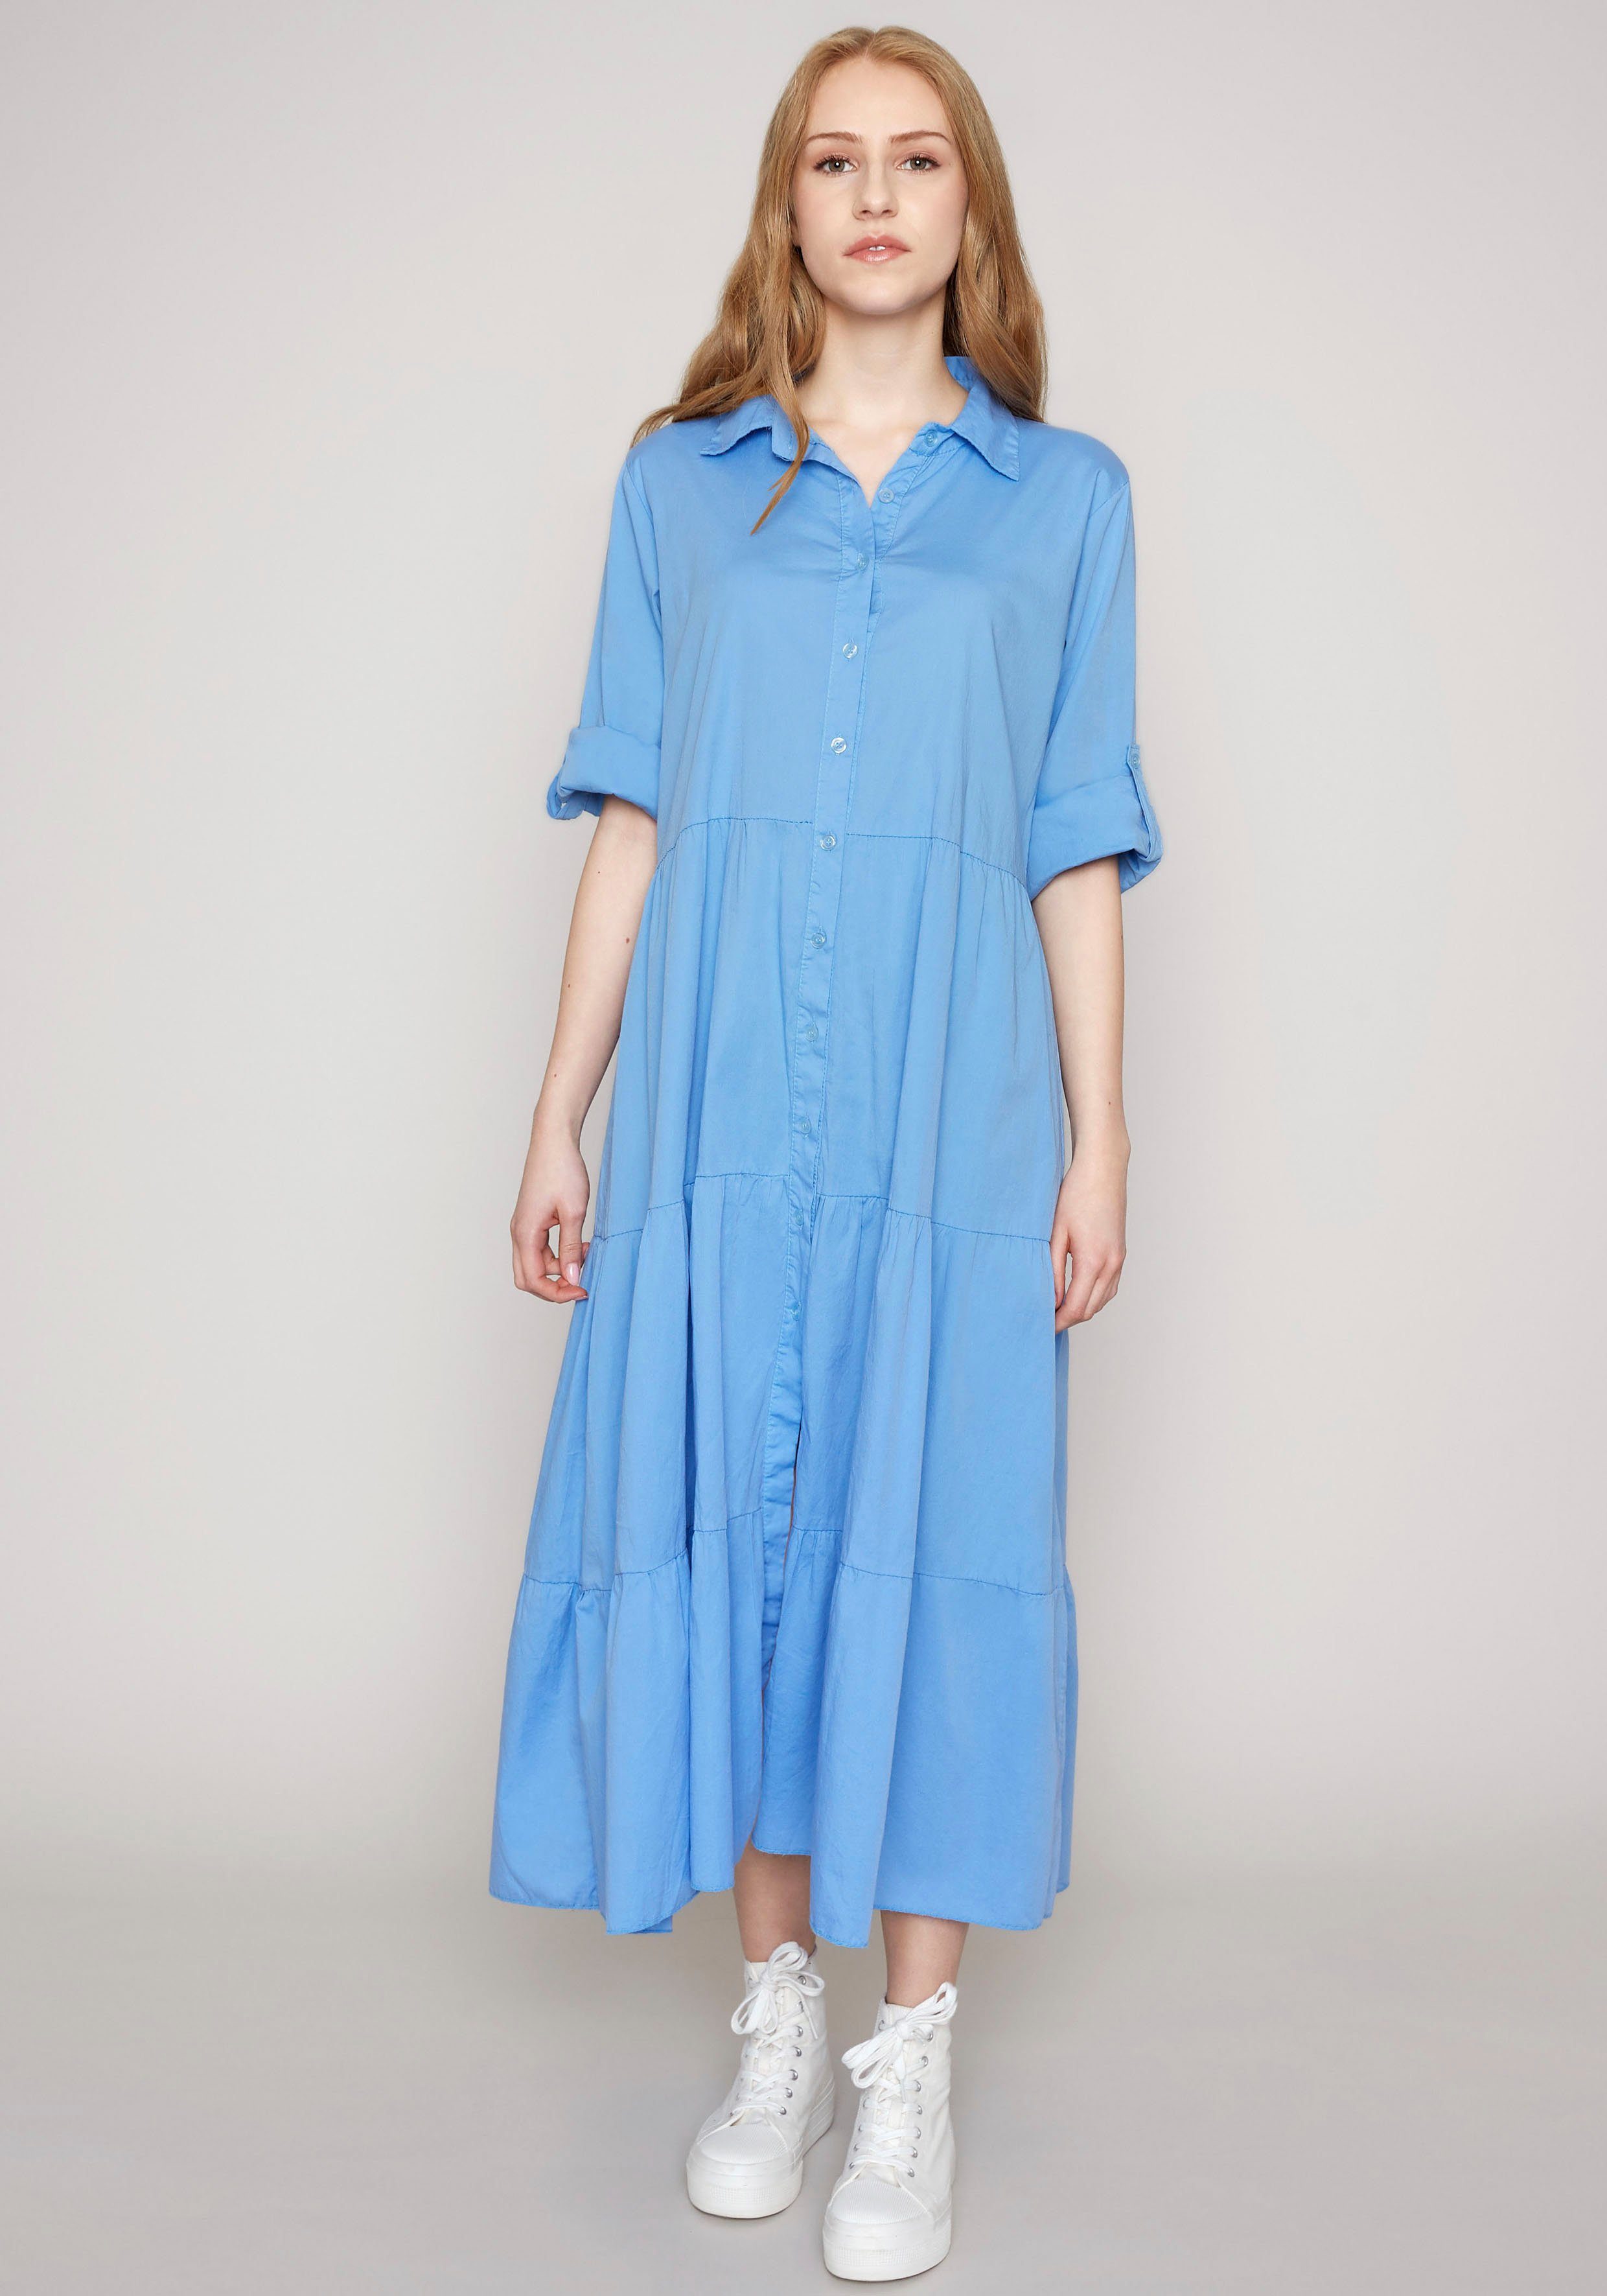 HaILY'S Sommerkleider für Damen online kaufen | OTTO